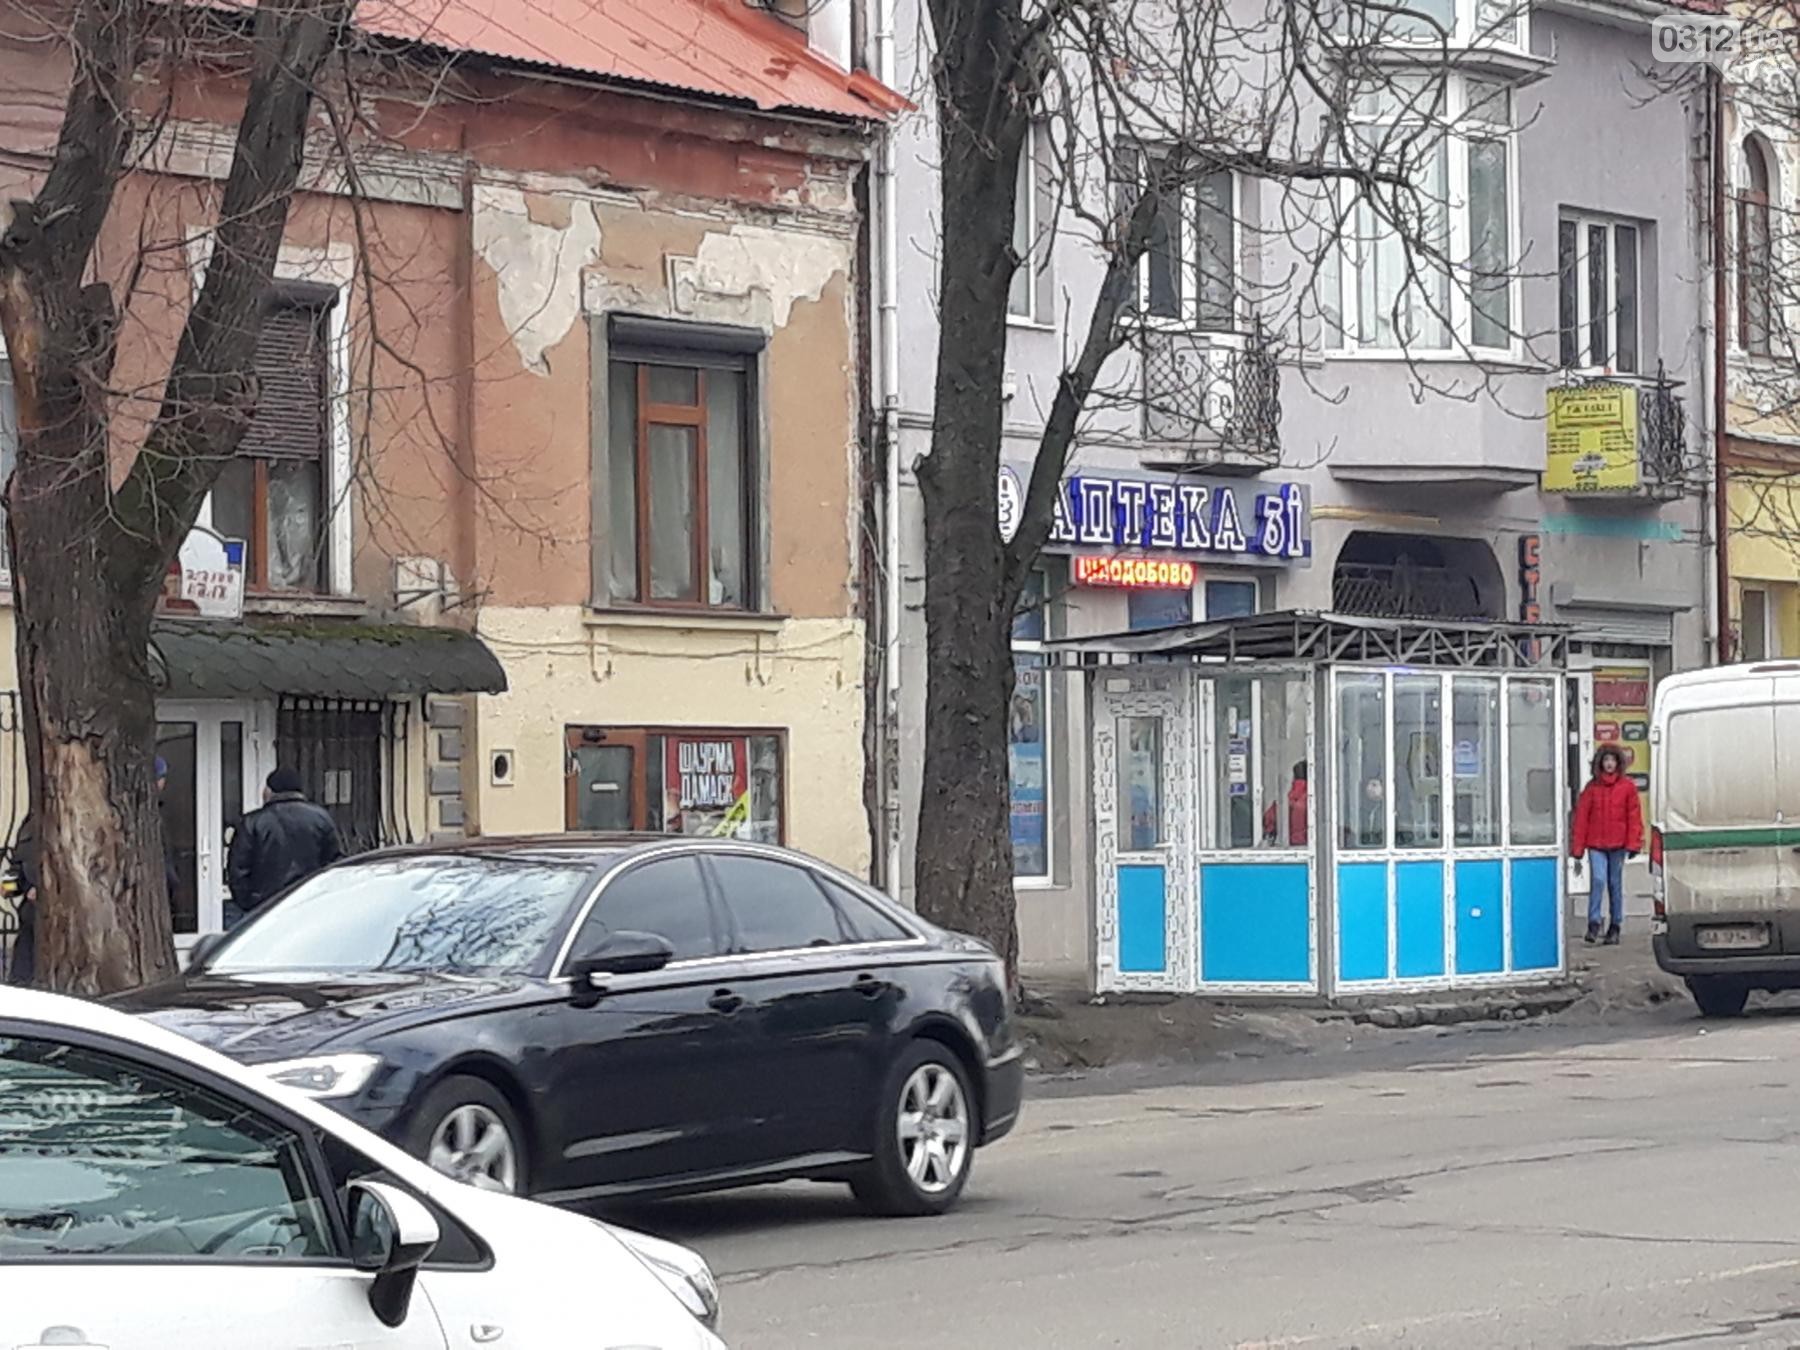 У кінці листопада 2017 року на площі Петефі в Ужгороді розпочали облаштування нової автобусної зупинки для маршруток №1, №2 і №12, яка має замінити існуючу поруч.

